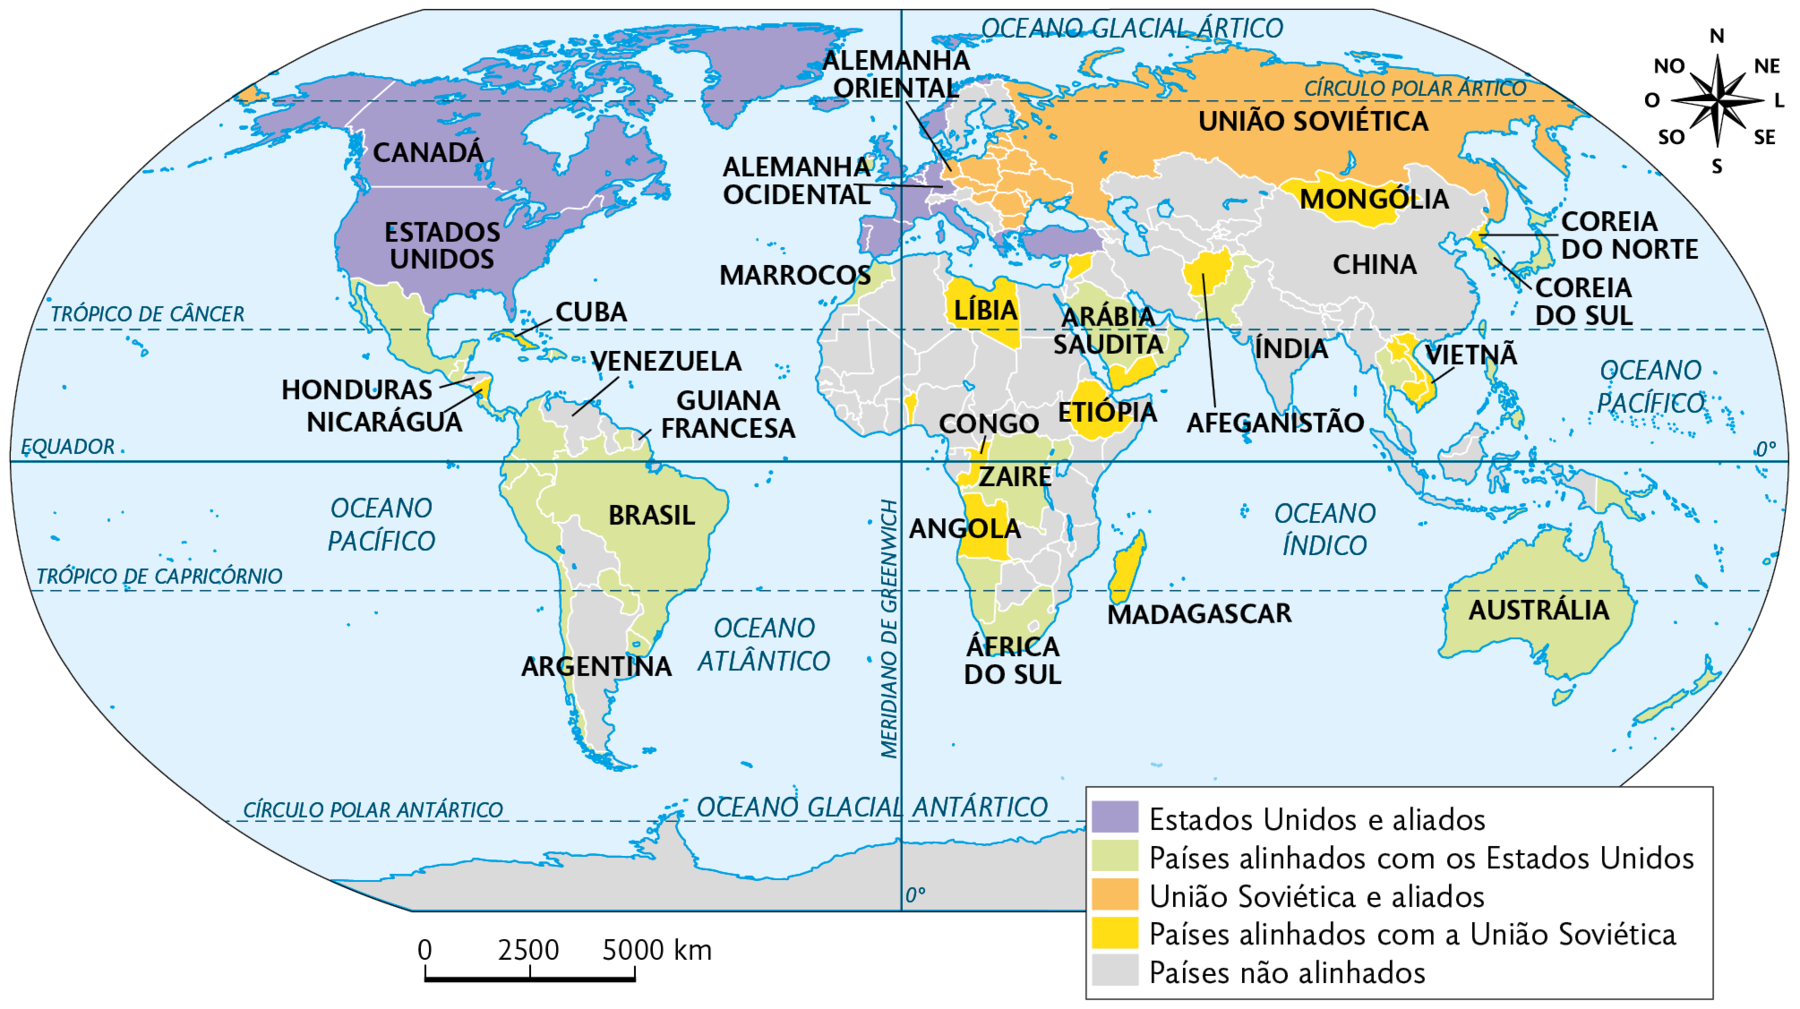 Mapa. As áreas de influência (1945-1989). Planisfério destacado conforme legenda: Estados Unidos e aliados: CANADÁ, ESTADOS UNIDOS, ALEMANHA OCIDENTAL e parte da EUROPA. Países alinhados com os Estados Unidos: BRASIL e parte da AMÉRICA DO SUL, MARROCOS, ZAIRE, ÁFRICA DO SUL, ARÁBIA SAUDITA, AUSTRÁLIA e COREIA DO SUL. União Soviética e aliados: UNIÃO SOVIÉTICA e ALEMANHA ORIENTAL. Países alinhados com a União Soviética: NICARÁGUA, CUBA, LÍBIA, CONGO, ANGOLA, ETIÓPIA. MADAGASCAR, AFEGANISTÃO, MONGÓLIA, VETNÃ E COREIA DO NORTE. Países não alinhados: CHINA, ÍNDIA, parte da ÁFRICA, ARGENTINA, VENEZUELA HONDURAS e GUIANA FRANCESA. No canto superior, à direita, representação da rosa dos ventos e escala de 5000 quilômetros por centímetro.